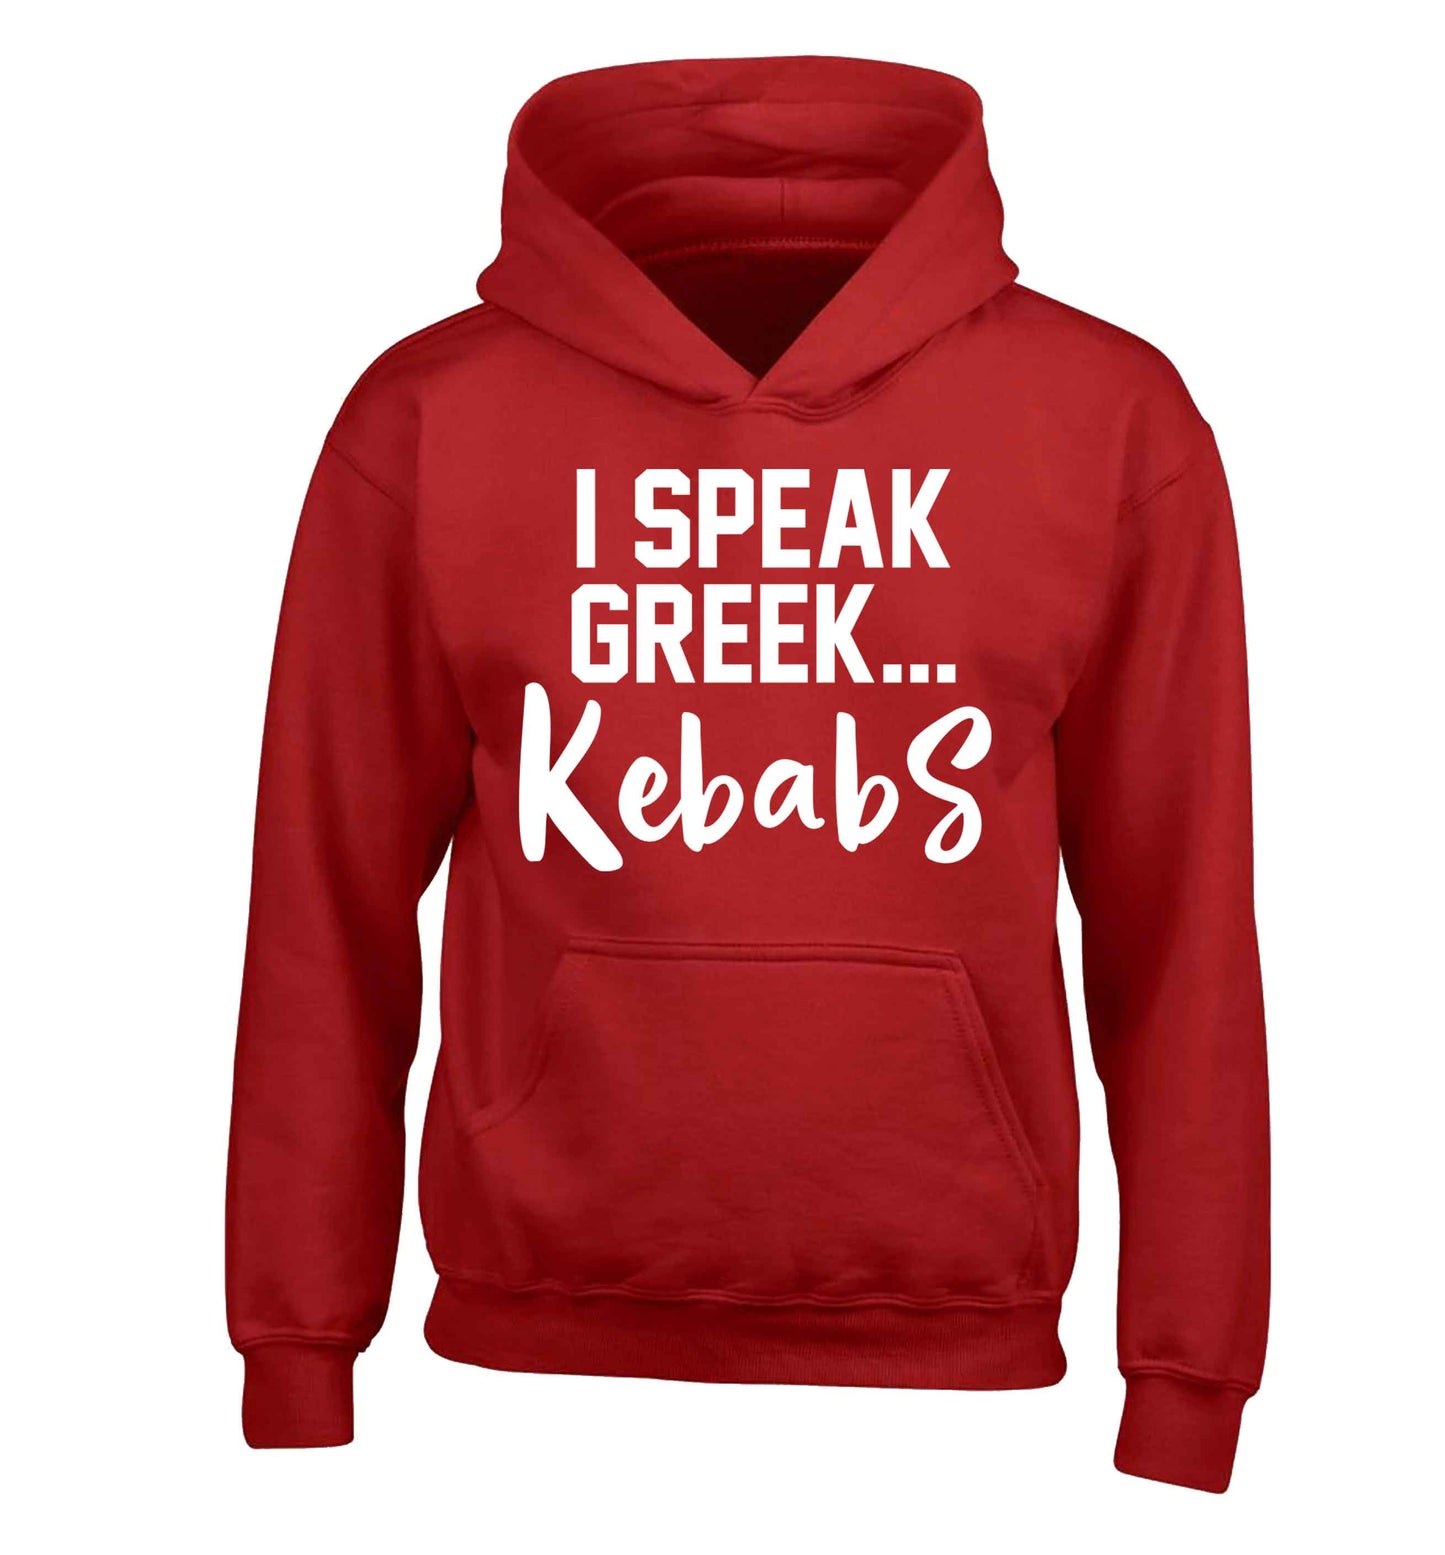 I speak Greek...kebabs children's red hoodie 12-13 Years